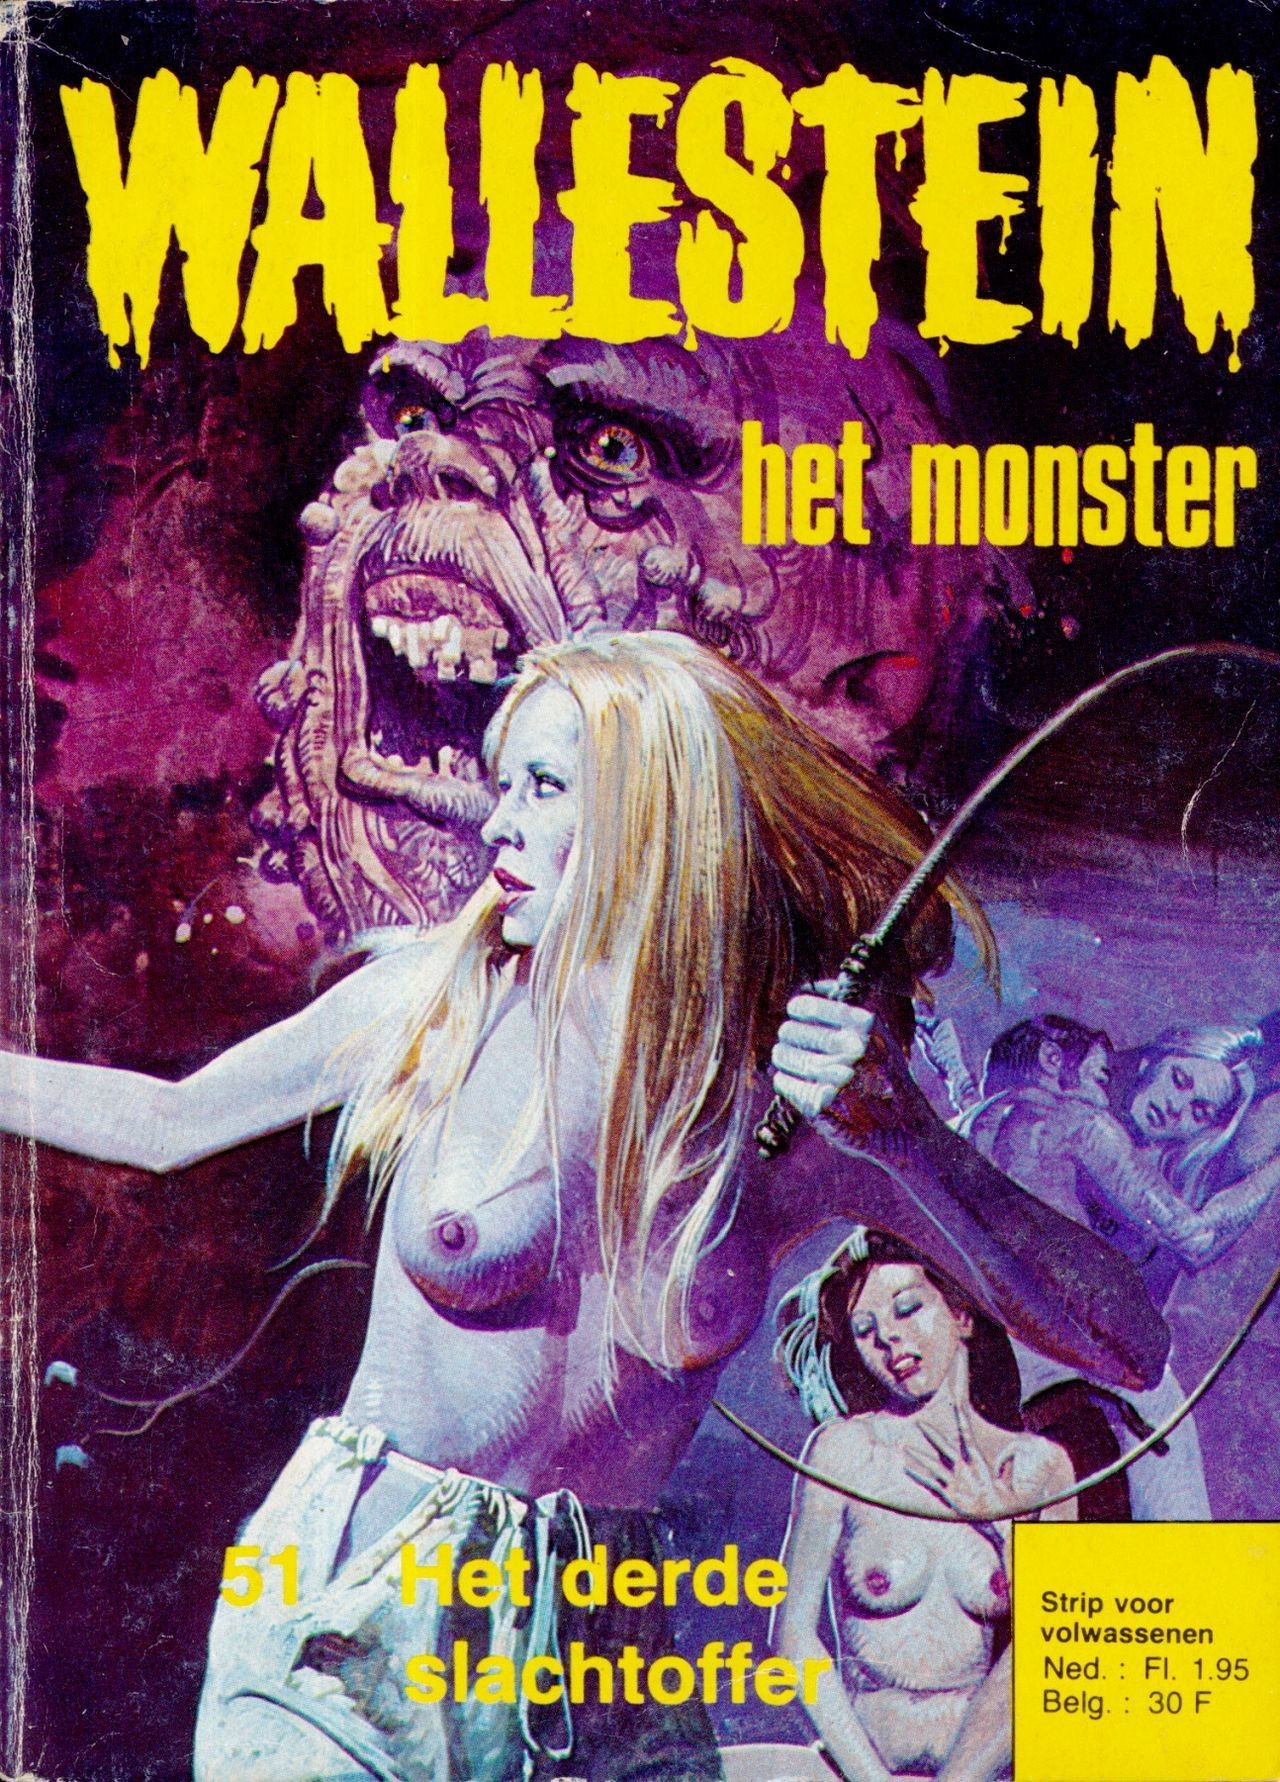 Lesbians Wallestein Het Monster - 051 - Het Derde Slachtoffer (Dutch) In 9 Series...meer Dan 90 Strips Uit De "Wallestein" Serie! Gay Clinic